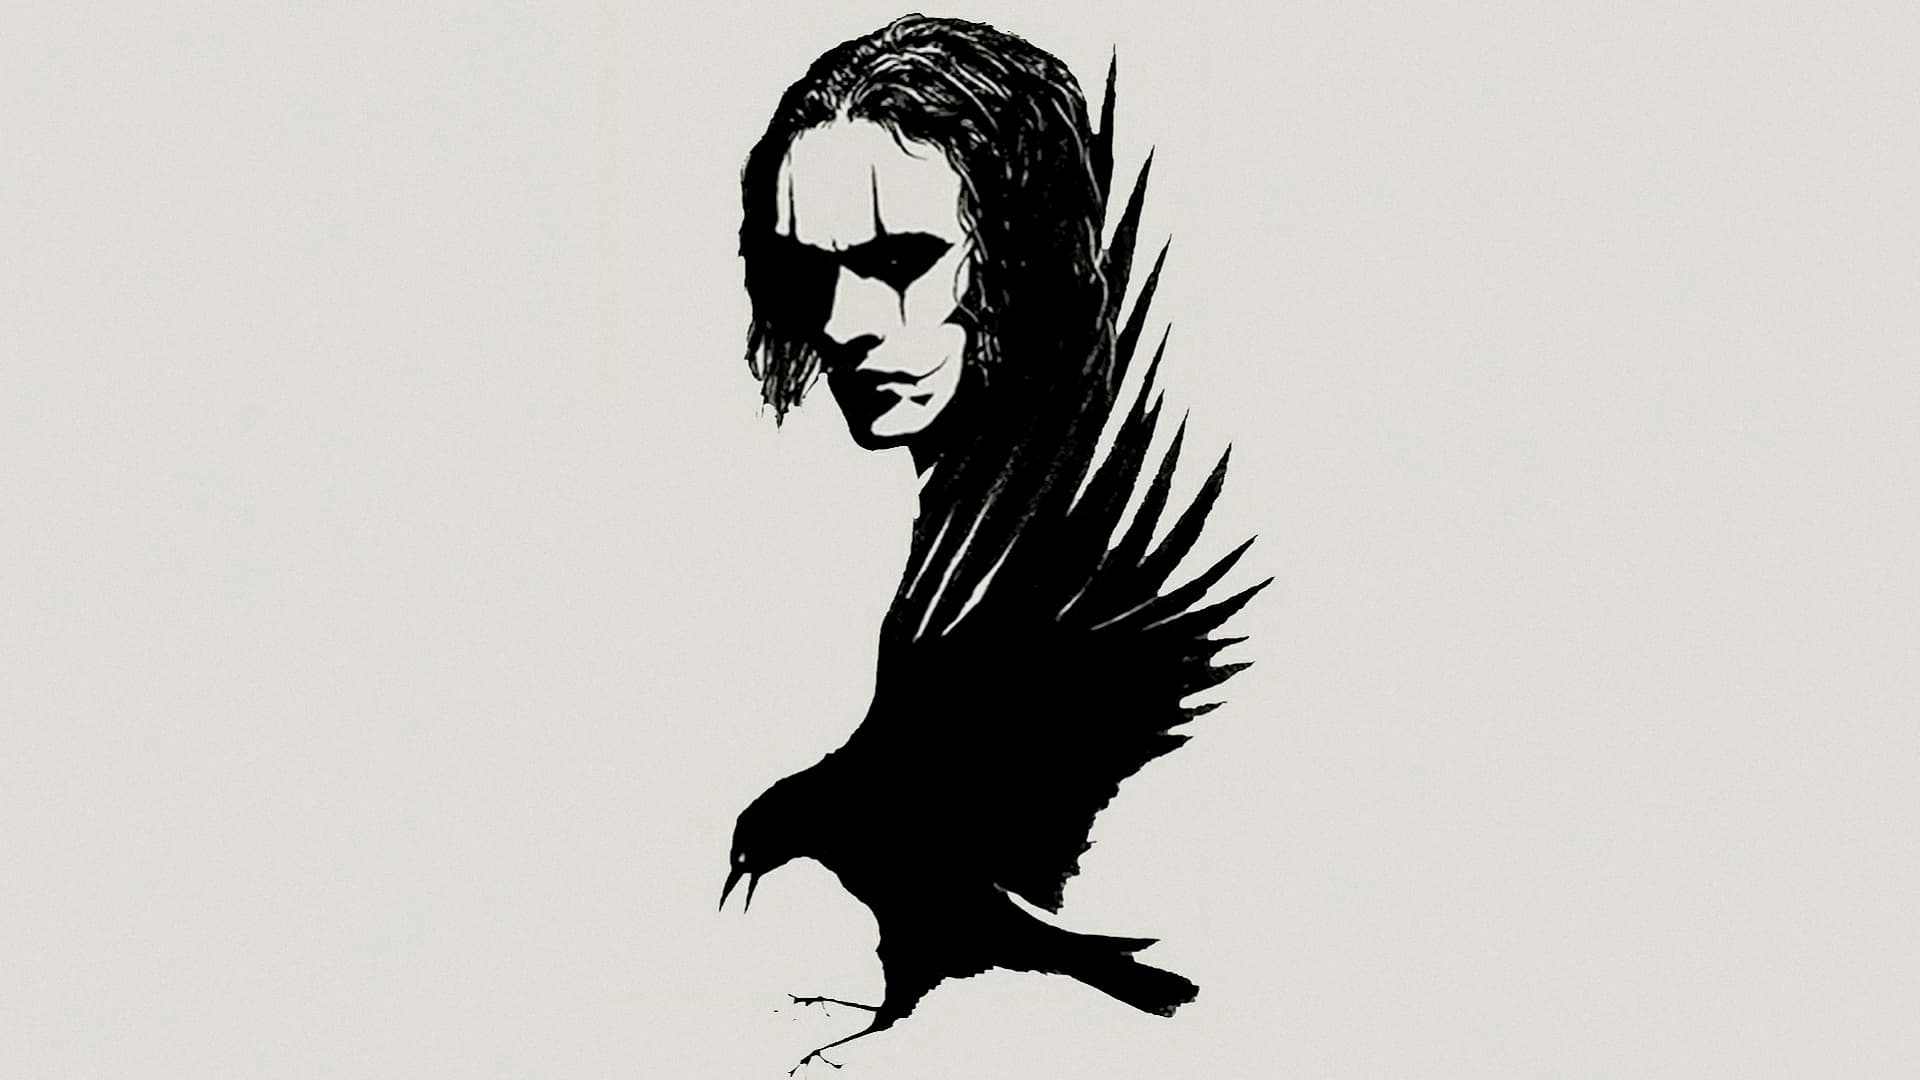 Crow (1994)